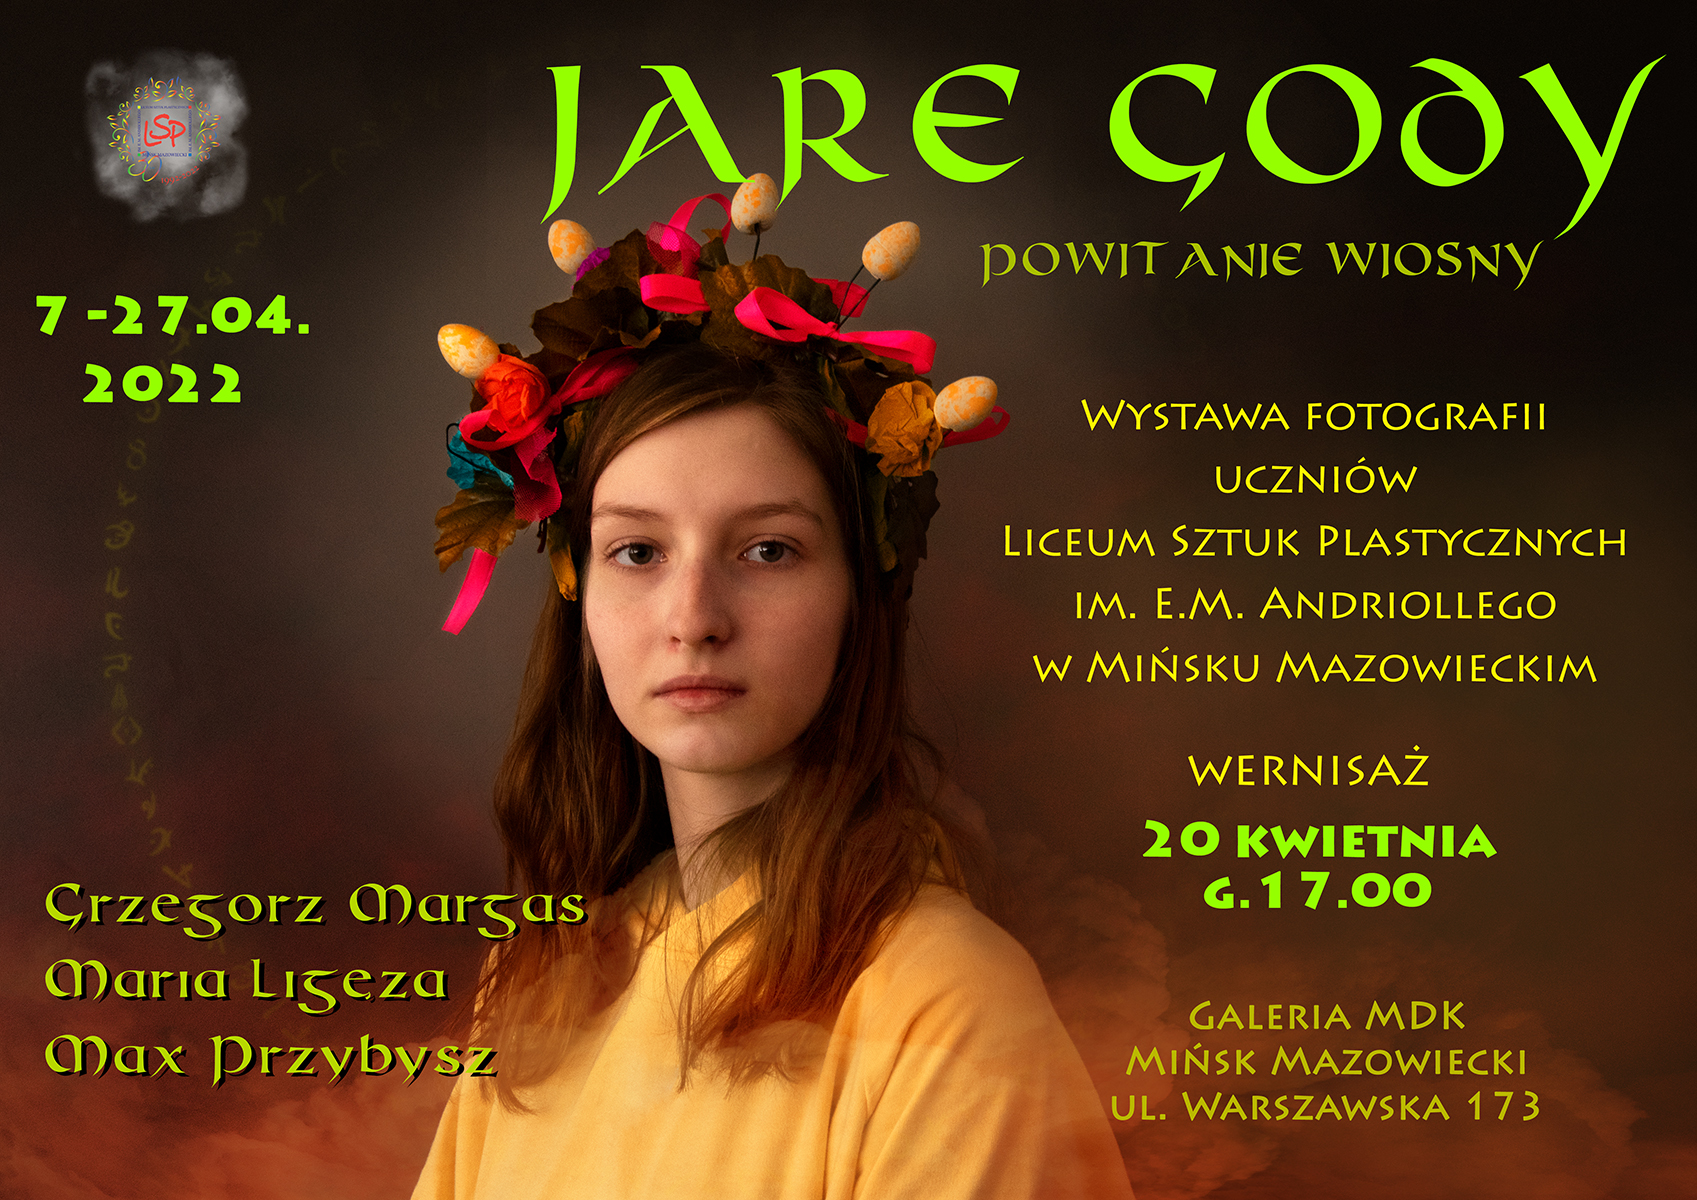 Jare Gody – Powitanie Wiosny 7-27.04.2022